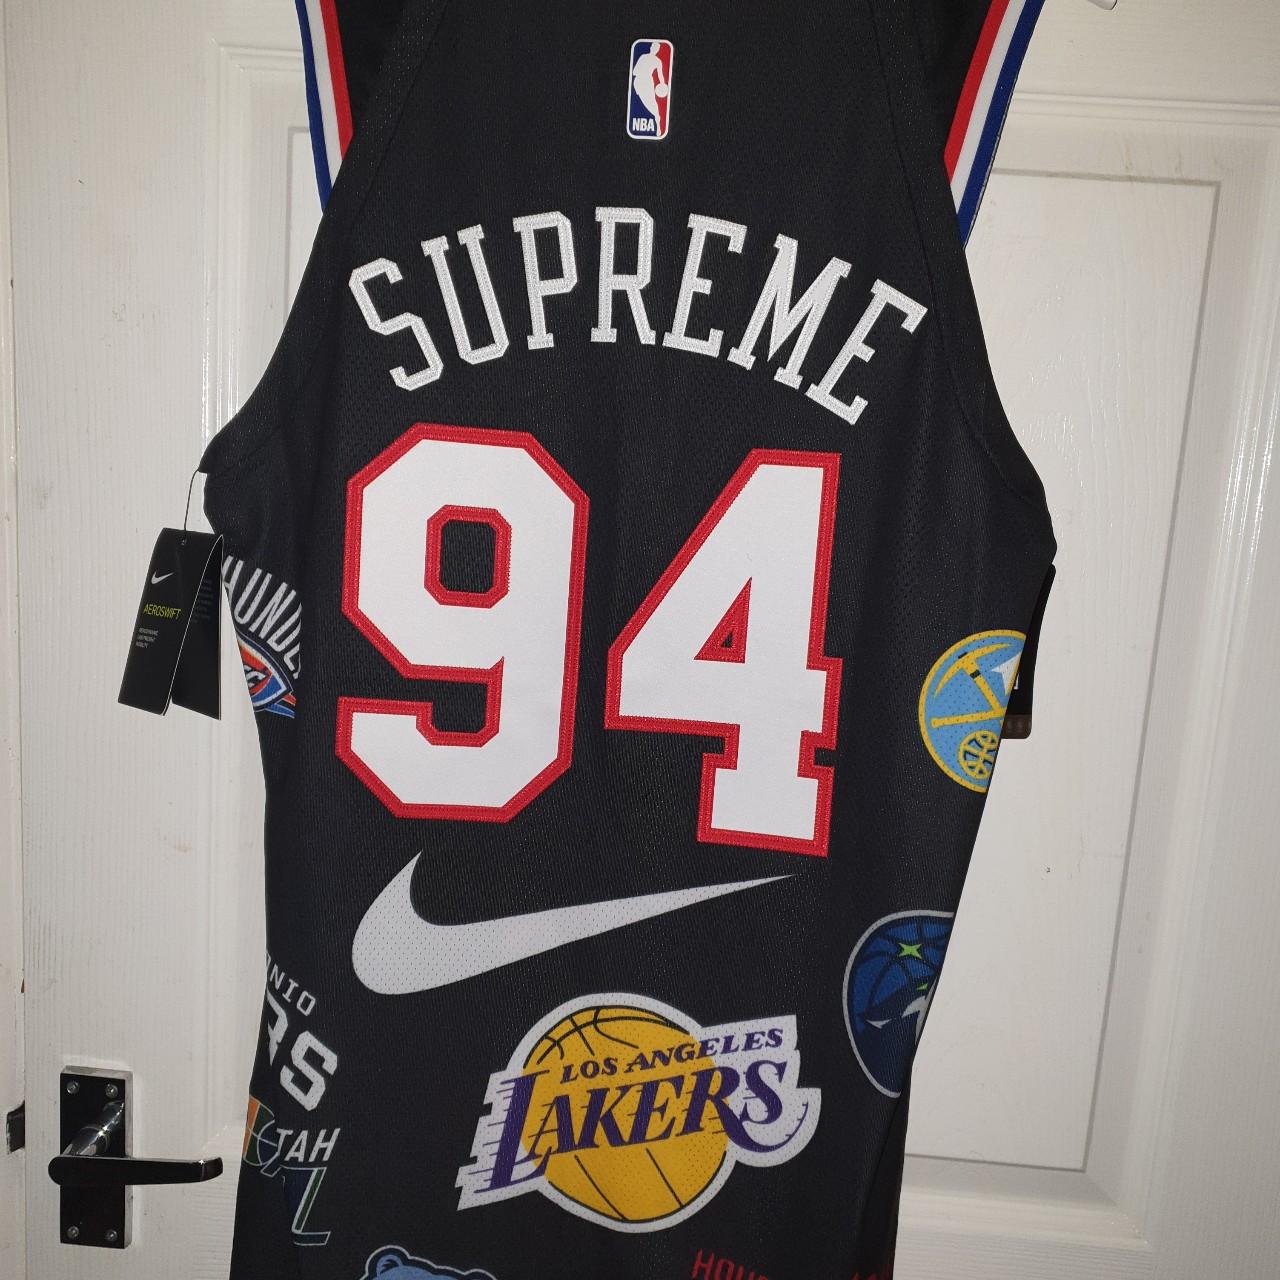 Supreme x Nike x NBA teams - Nike Jersey Black Size:... - Depop